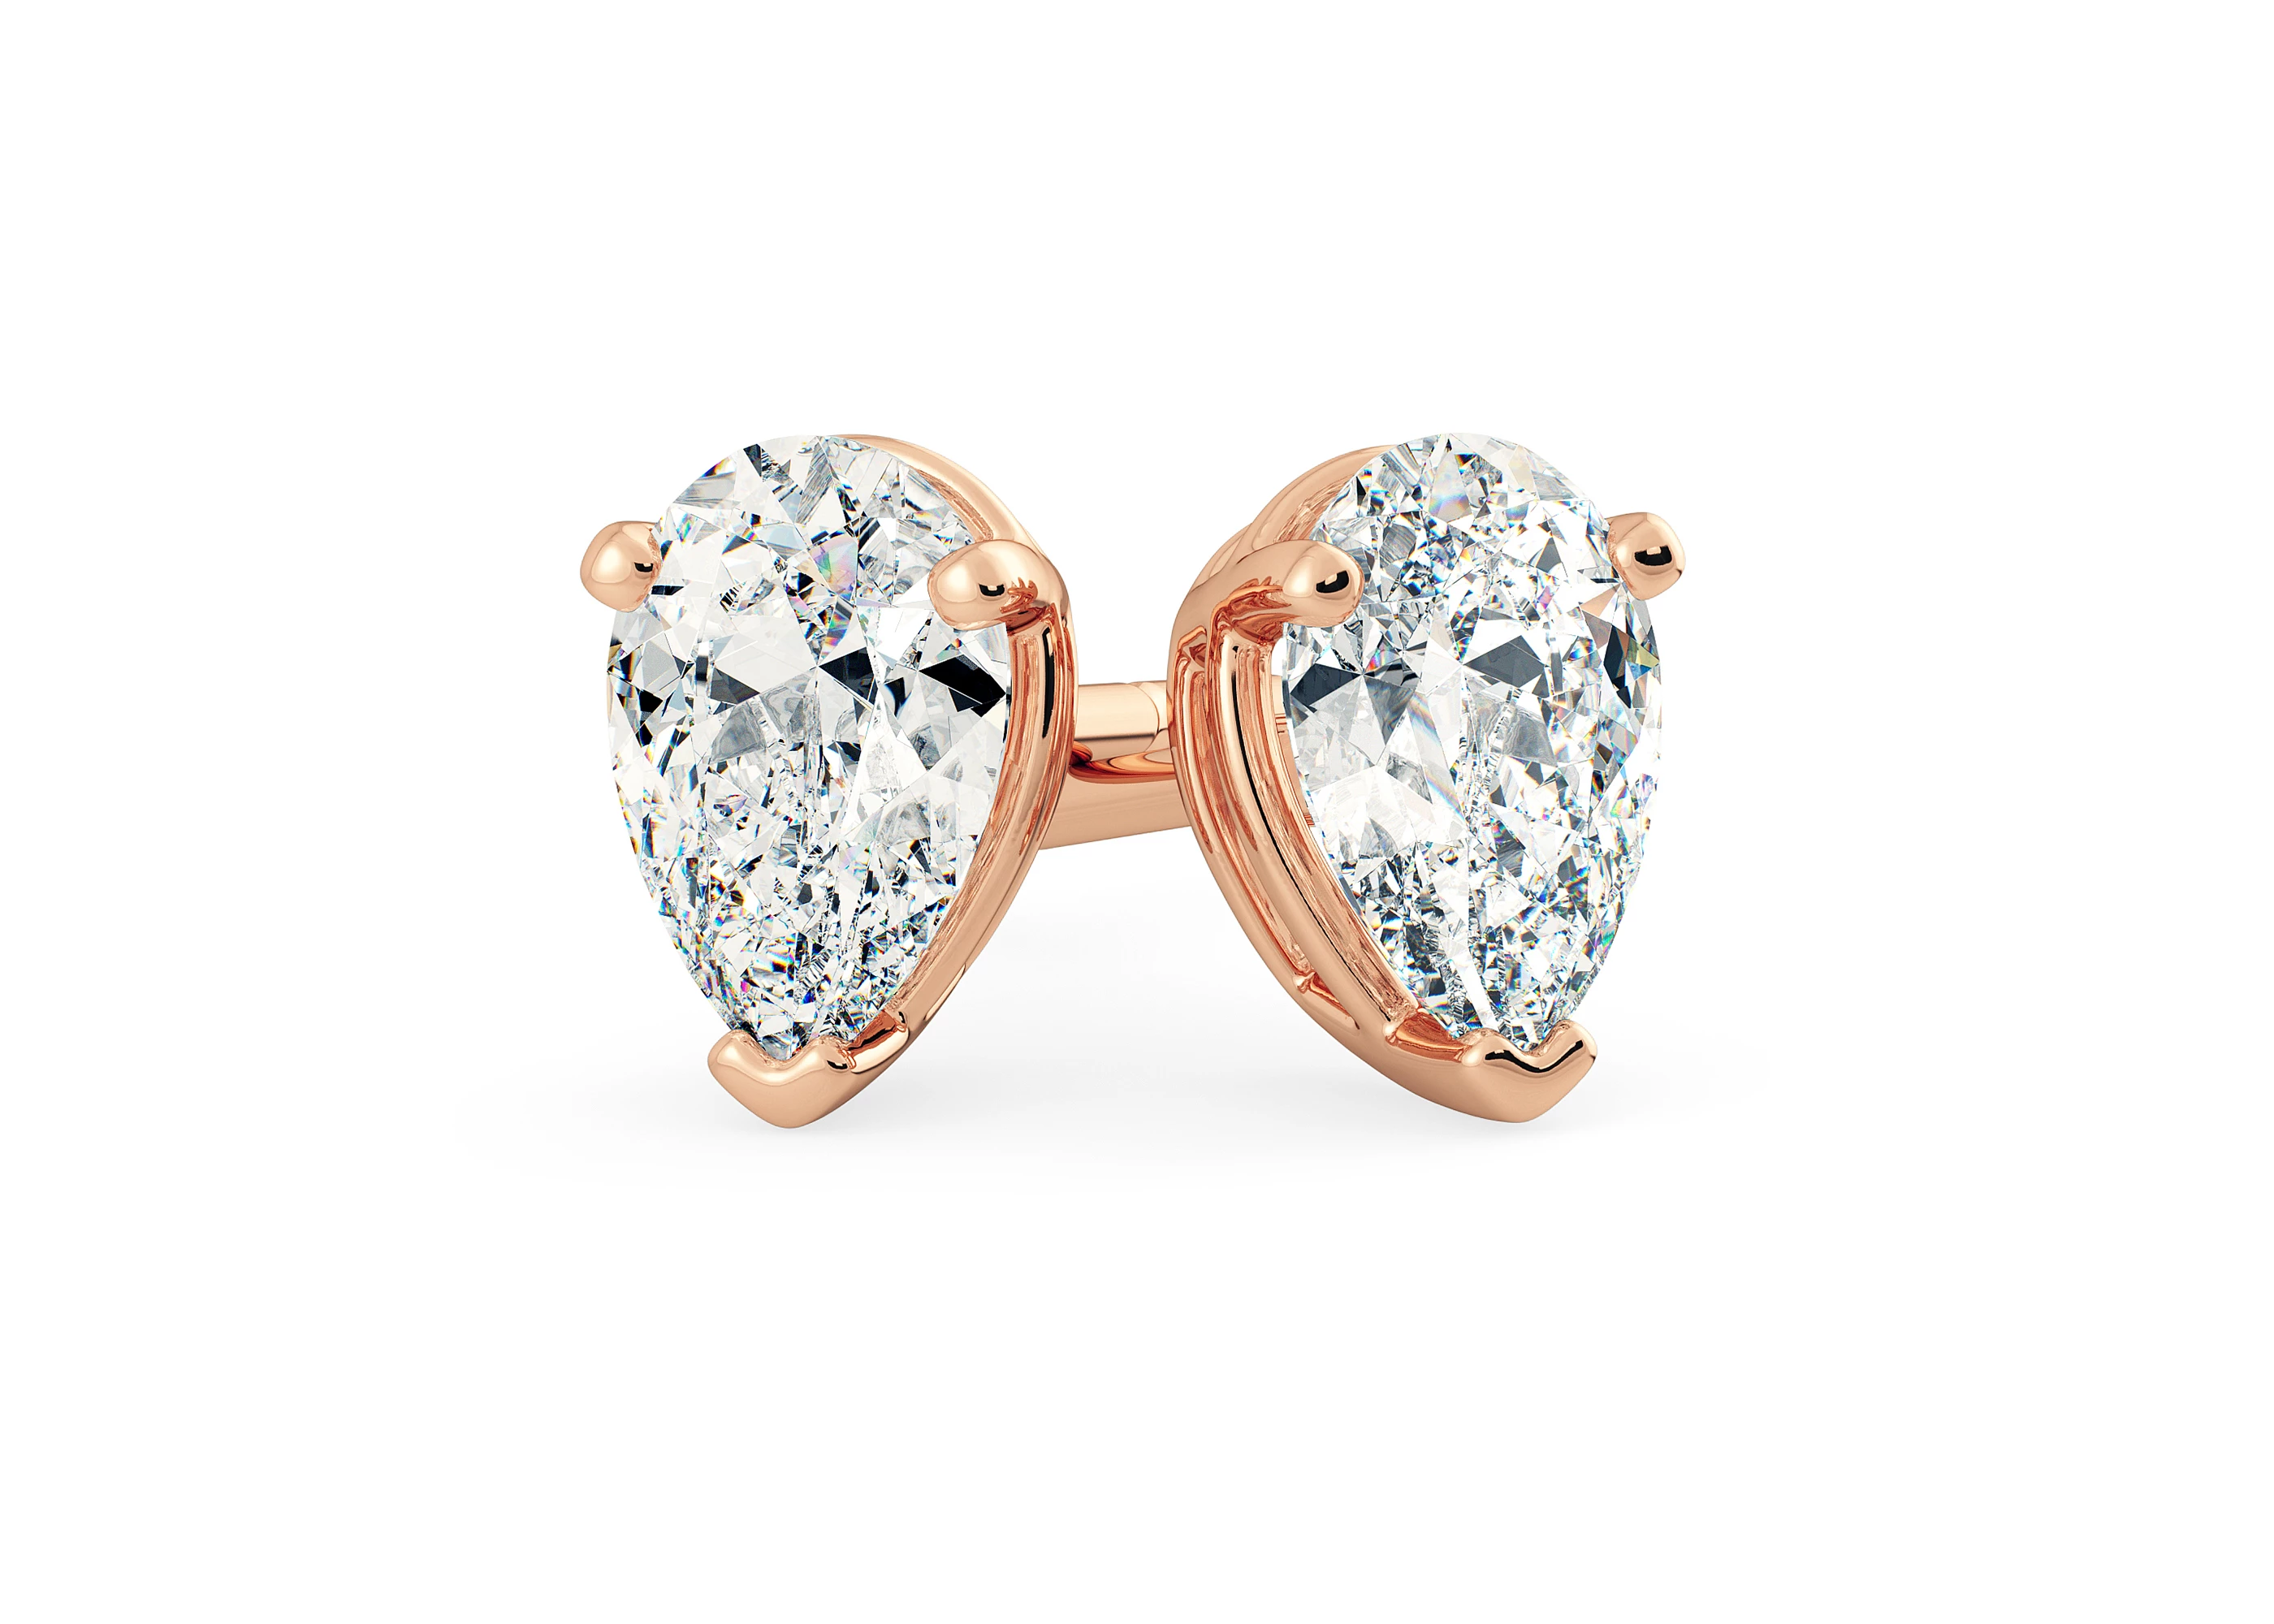 Ettore Pear Diamond Stud Earrings in 18K Rose Gold with Screw Backs